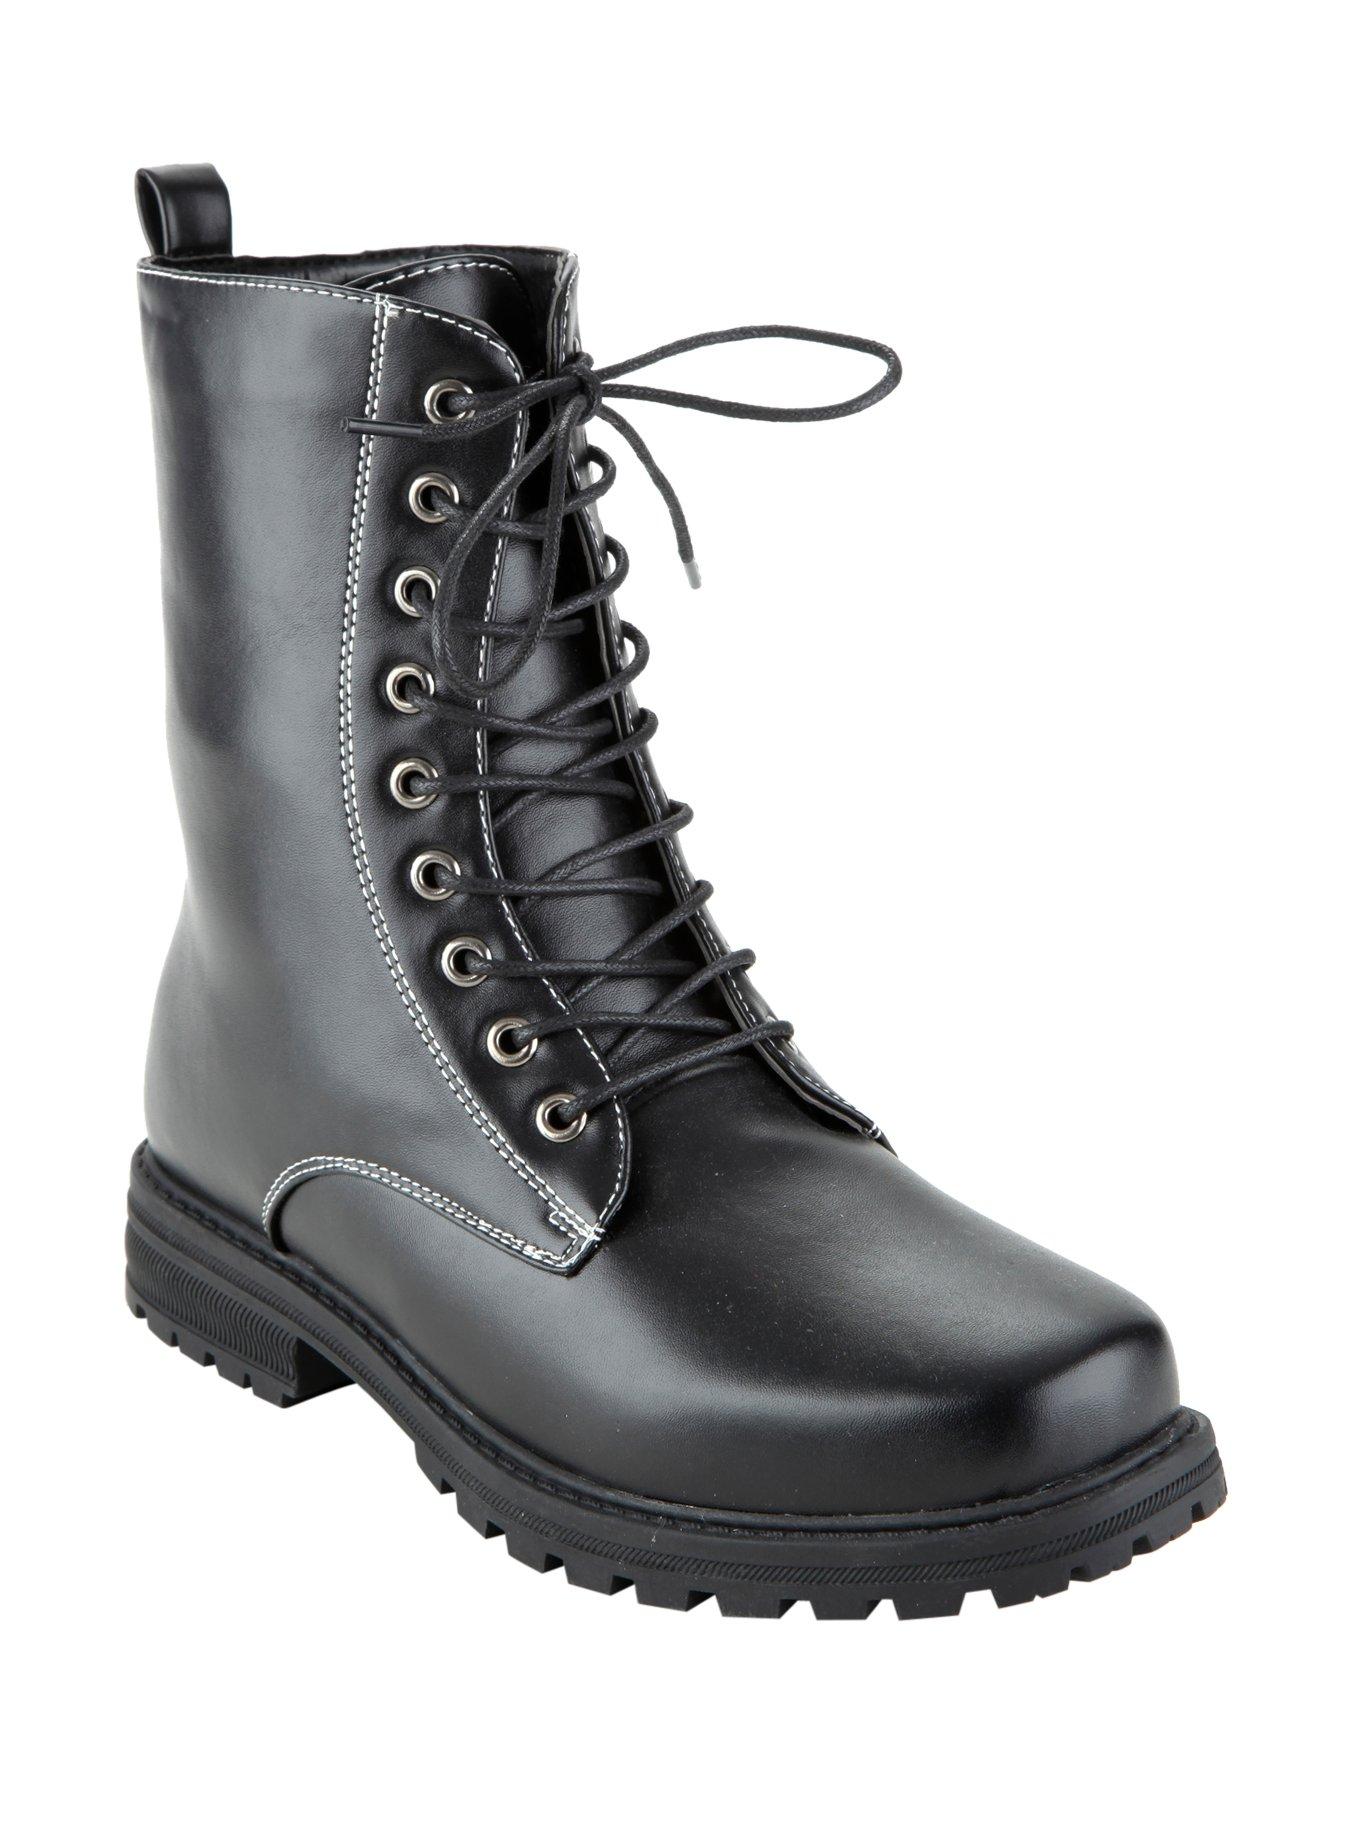 Black Combat Boots, BLACK, hi-res